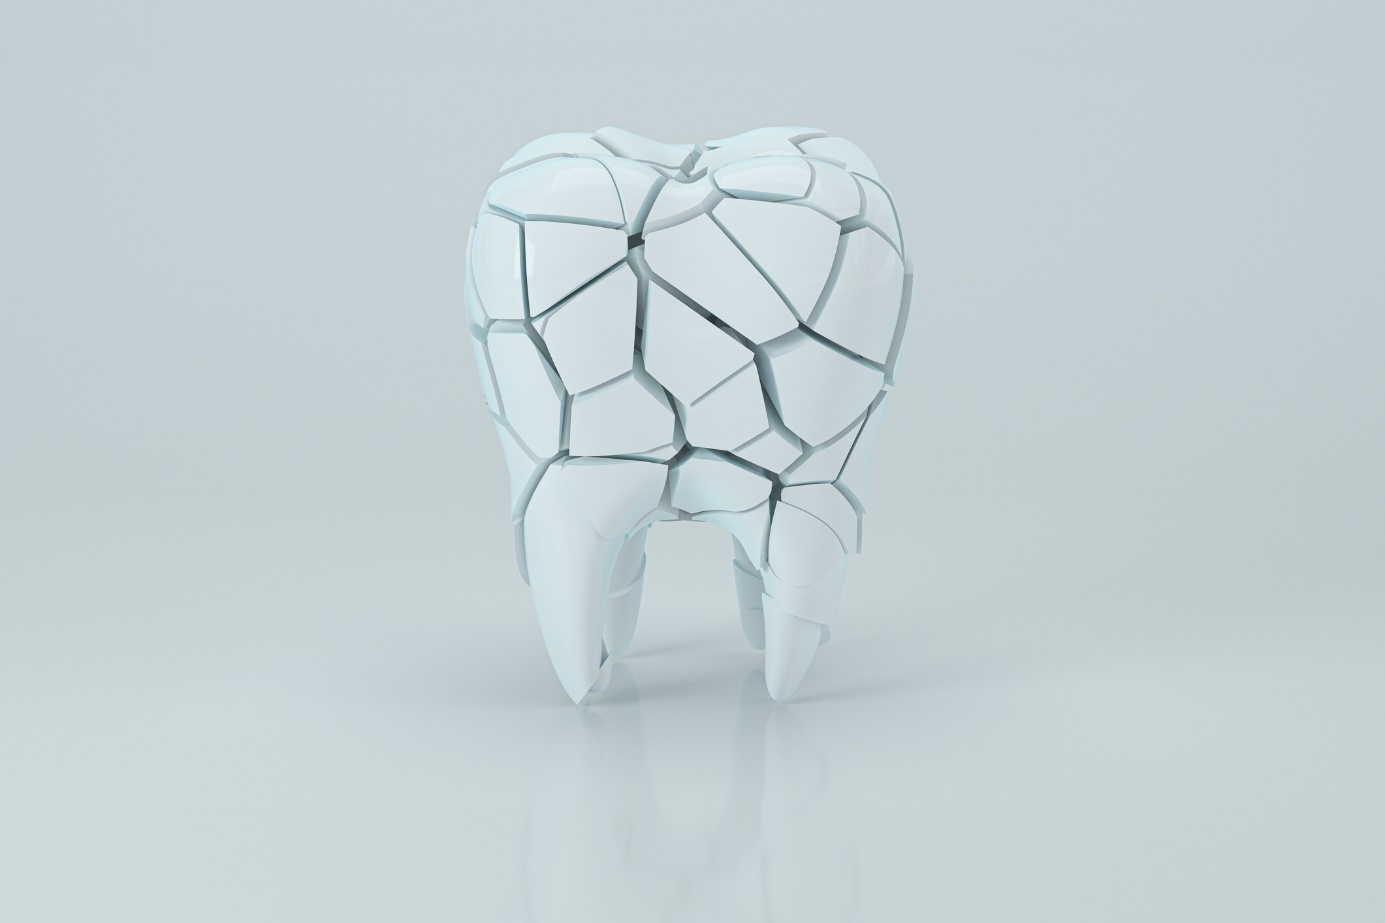 Zahn und Darstellung der Zahnkanäle - anatomische schematische Darstellung